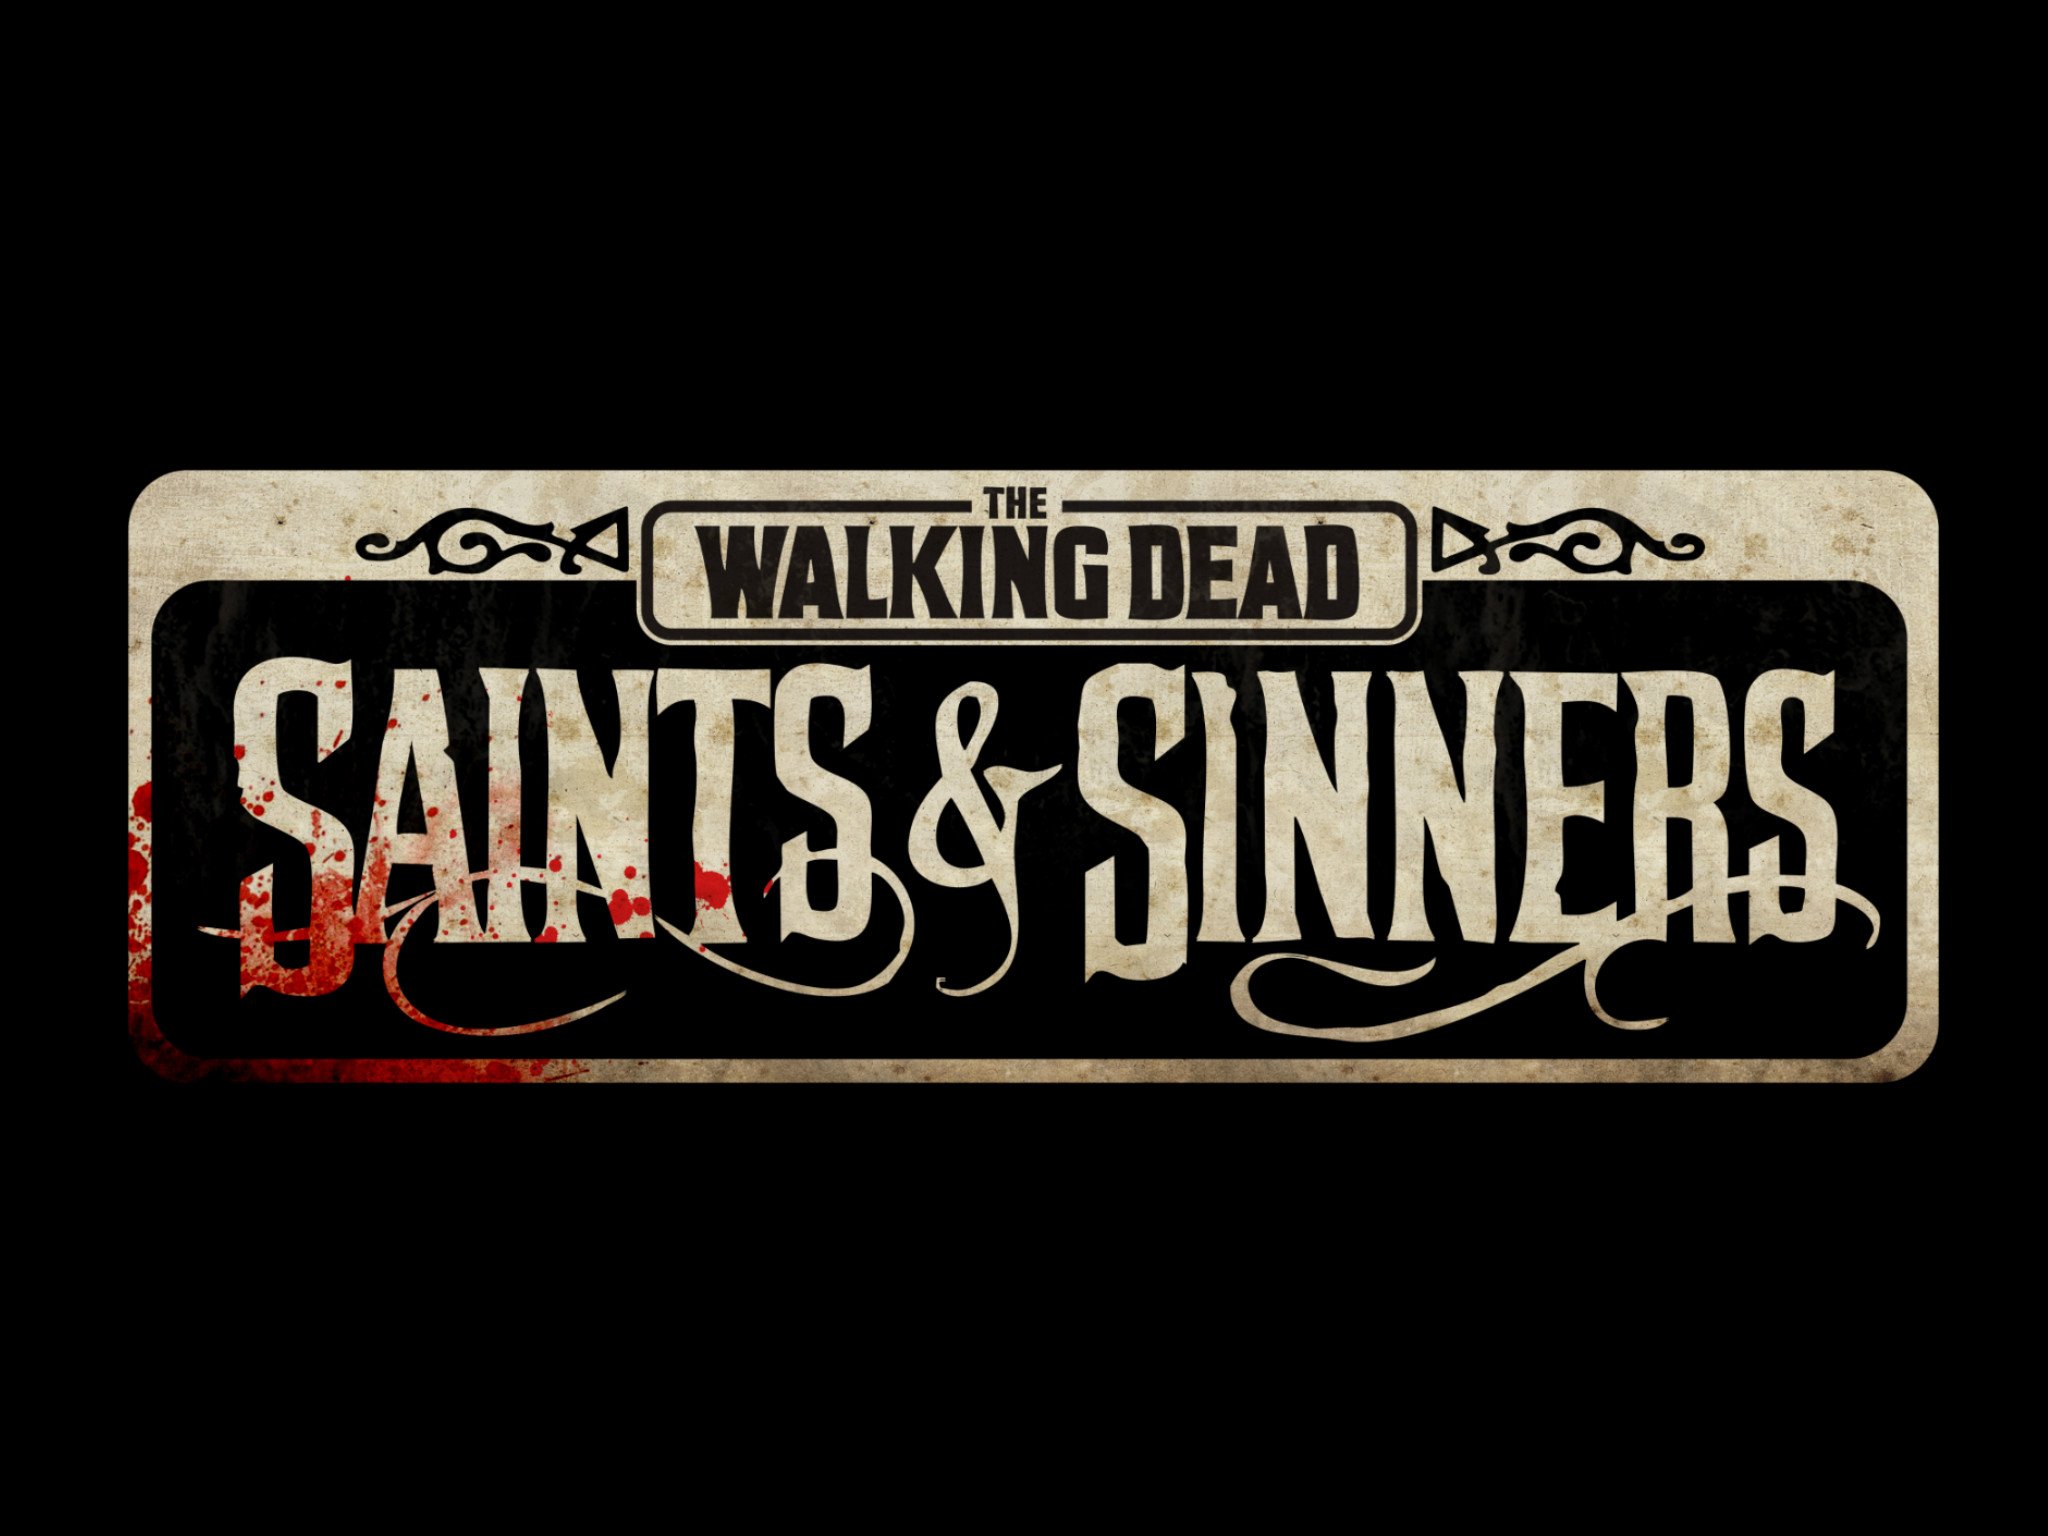 walking-dead-saints-sinners-logo.jpg